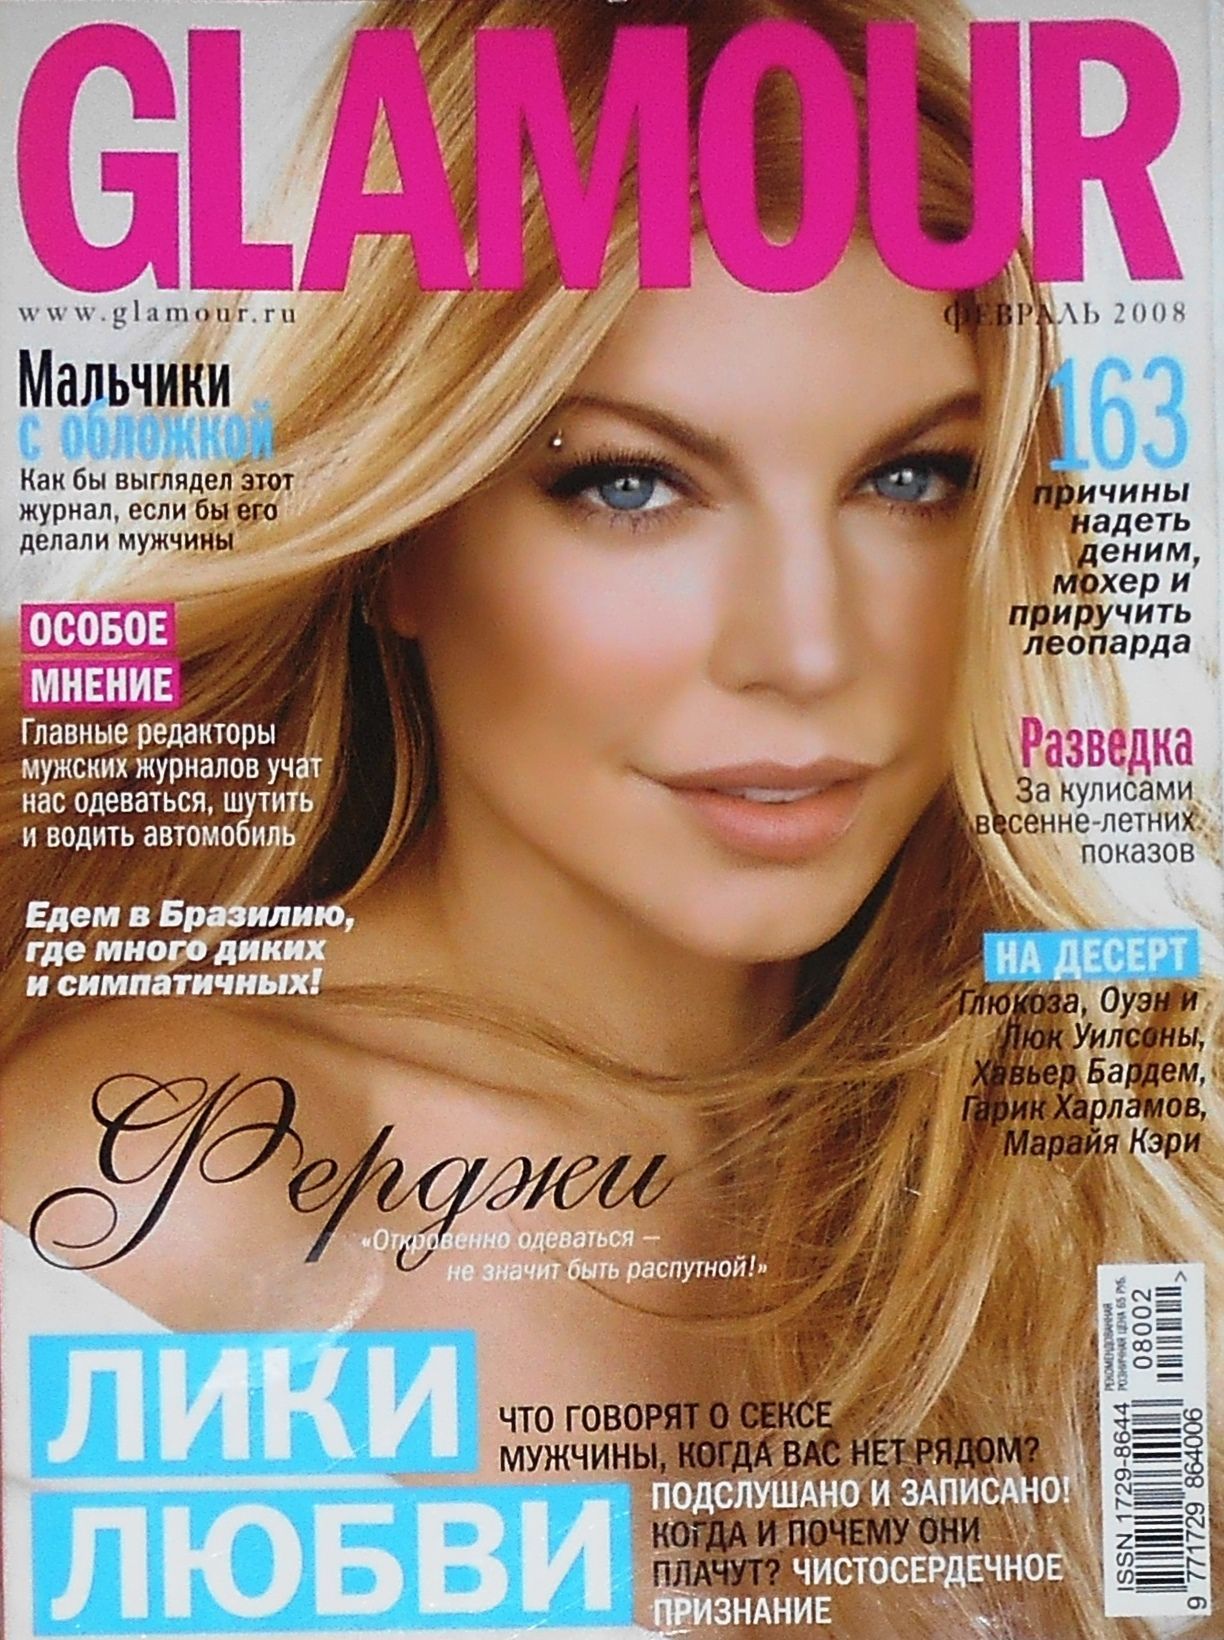 Какой журнал интереснее. Обложка для журнала. Обложки женских журналов. Гламурный журнал обложка. Журнал Glamour.